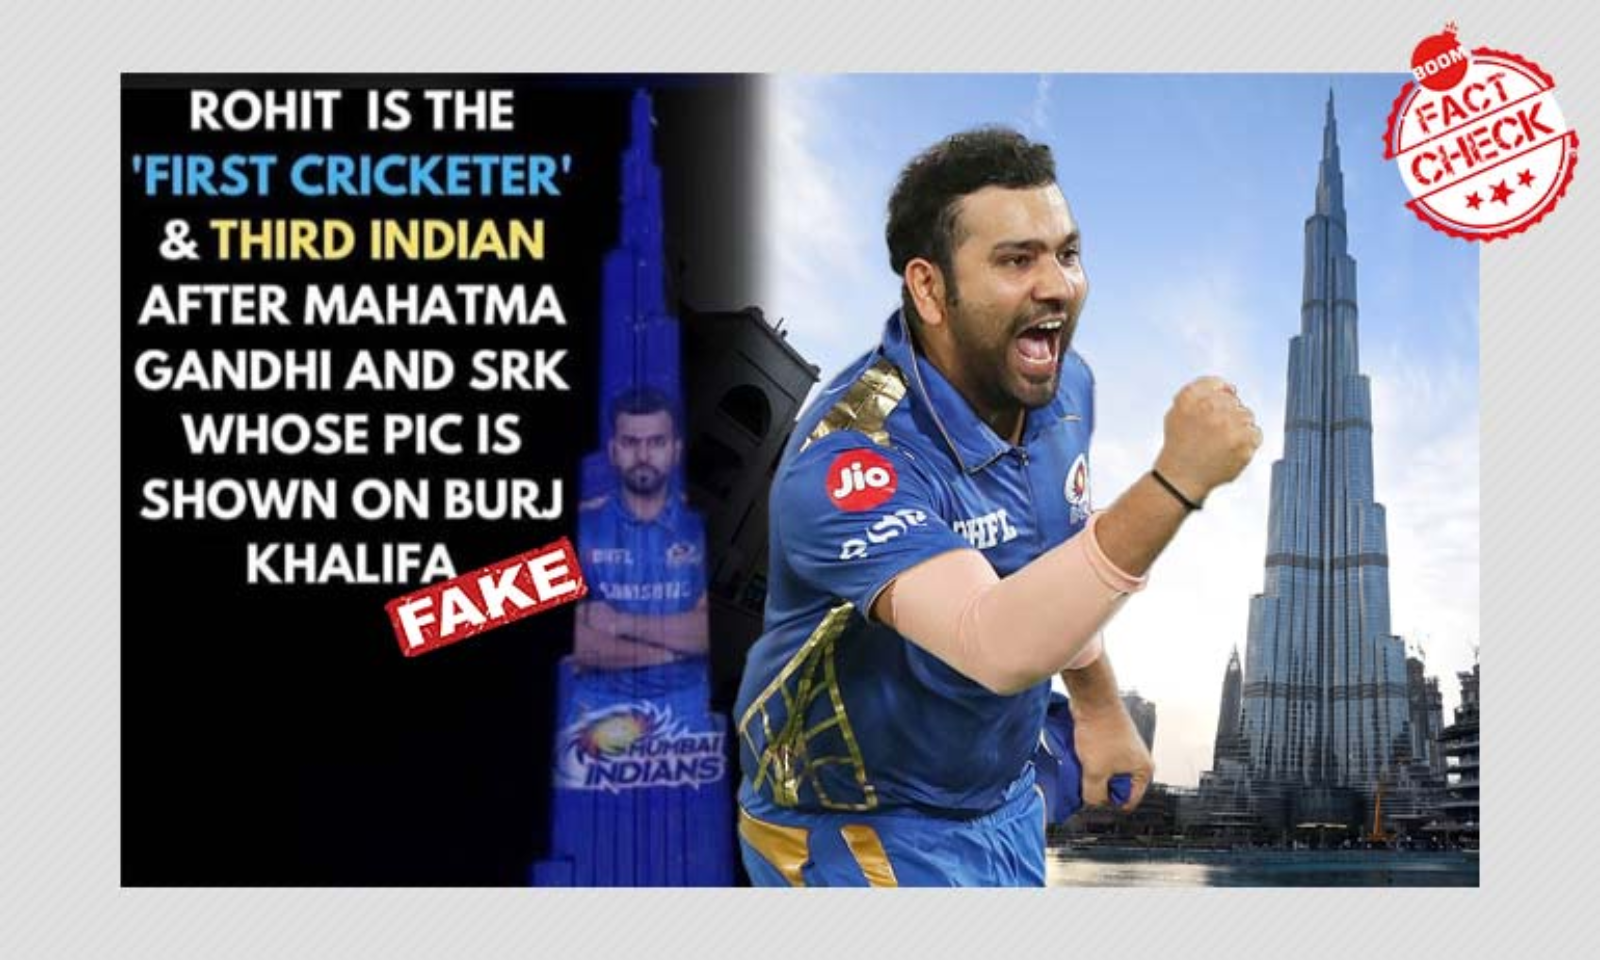 1600px x 960px - Rohit Sharma's Image Was Not Displayed On Burj Khalifa After MI's IPL Win |  BOOM